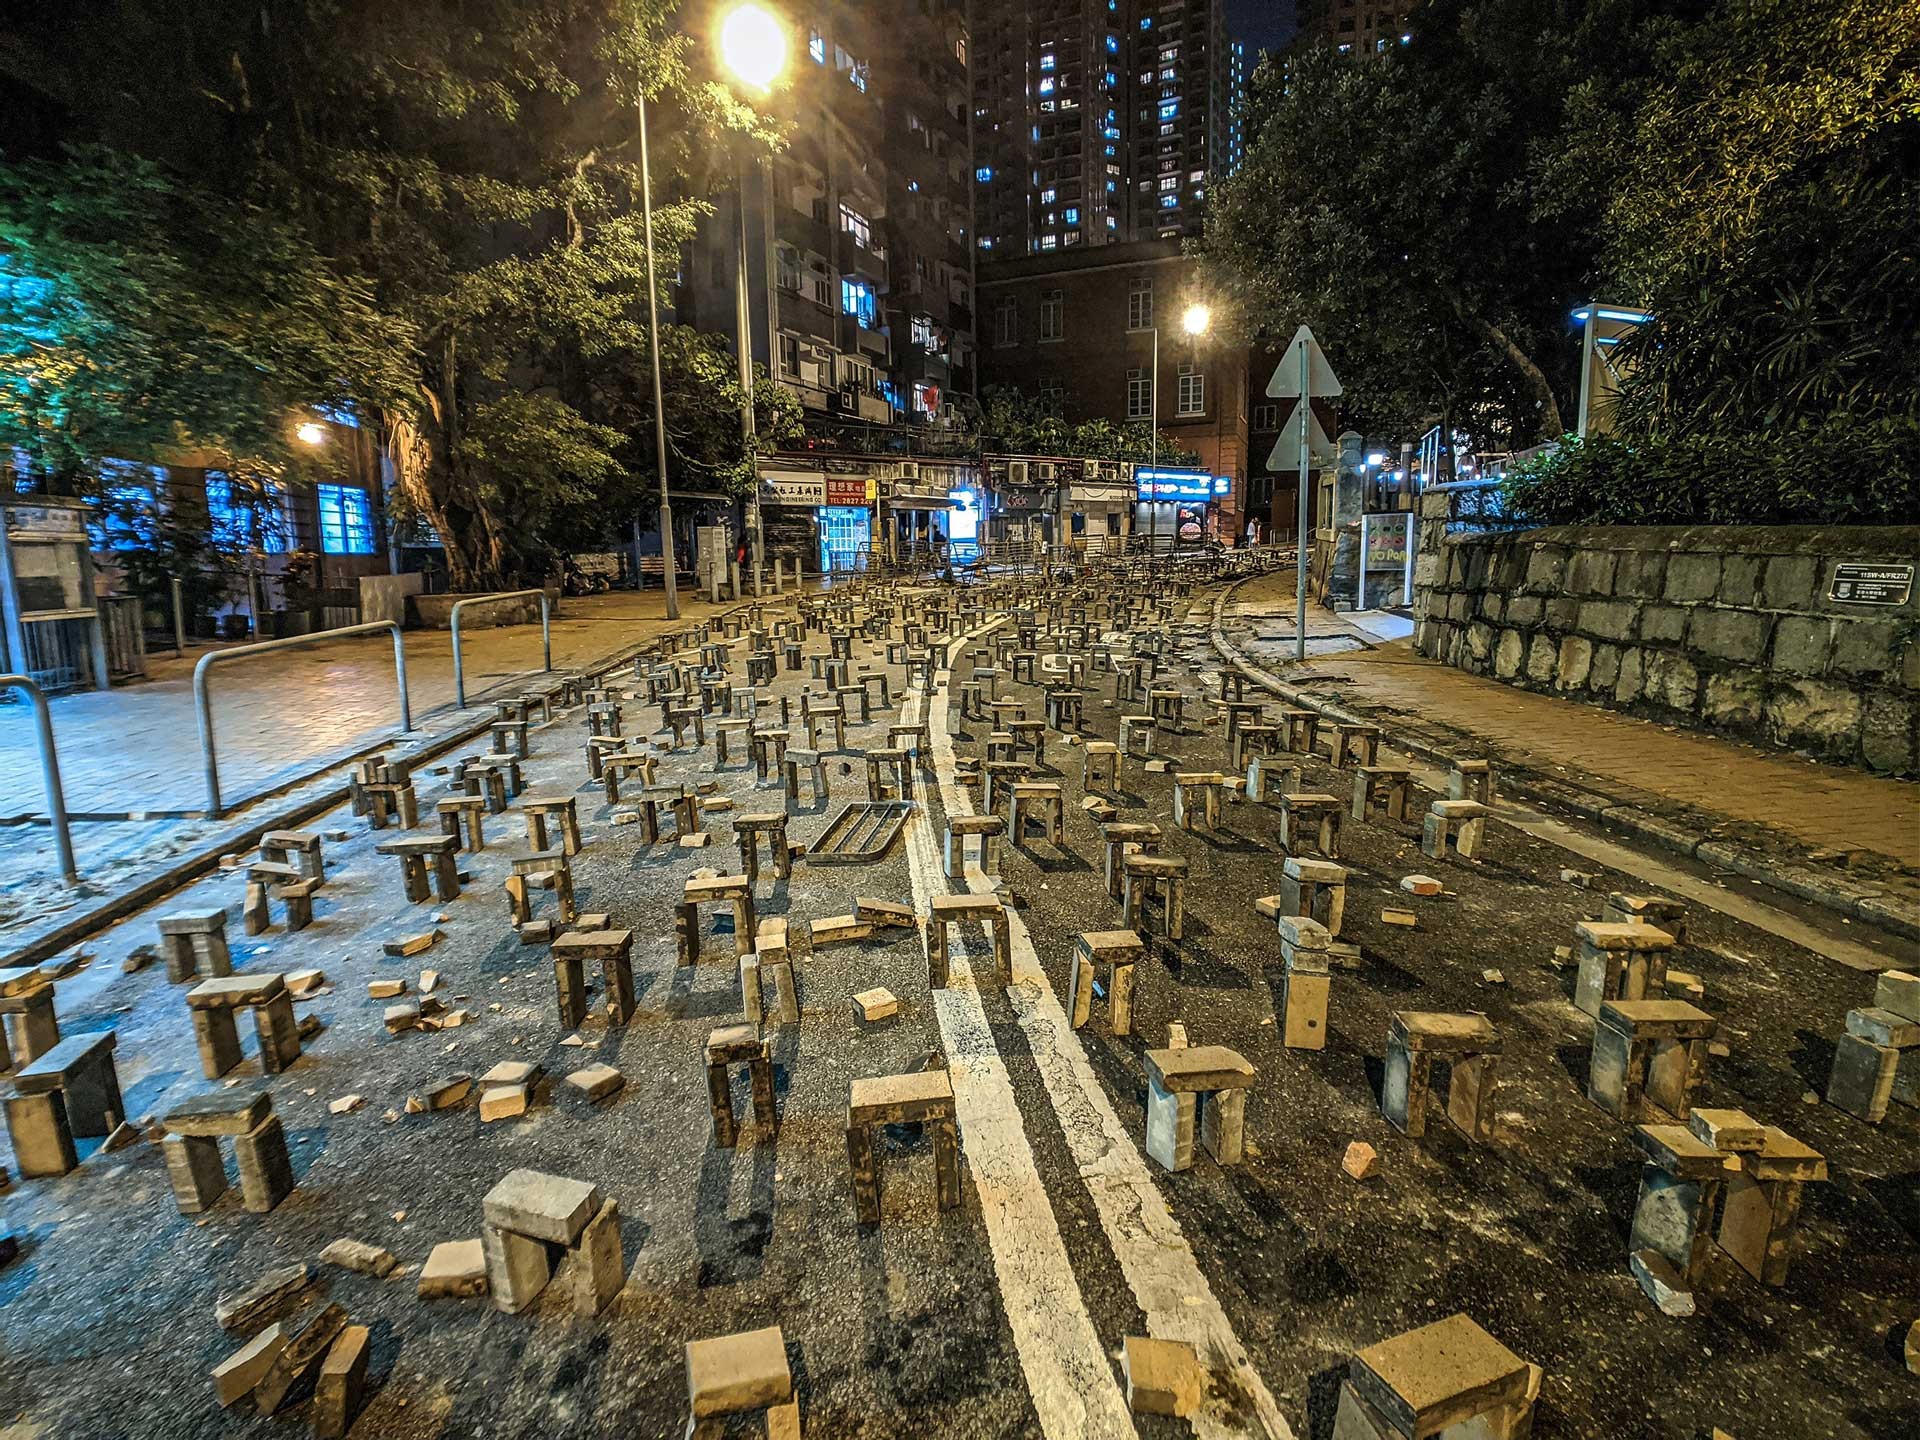 Barrikaden auf den Zufahrtsstraßen zur Hong Kong University. Ziegelsteine wurden teilweise mit Sekundenkleber auf dem Asphalt fixiert, sodass Fahrzeuge der Polizei nicht zum besetzten Campus vordringen konnten.